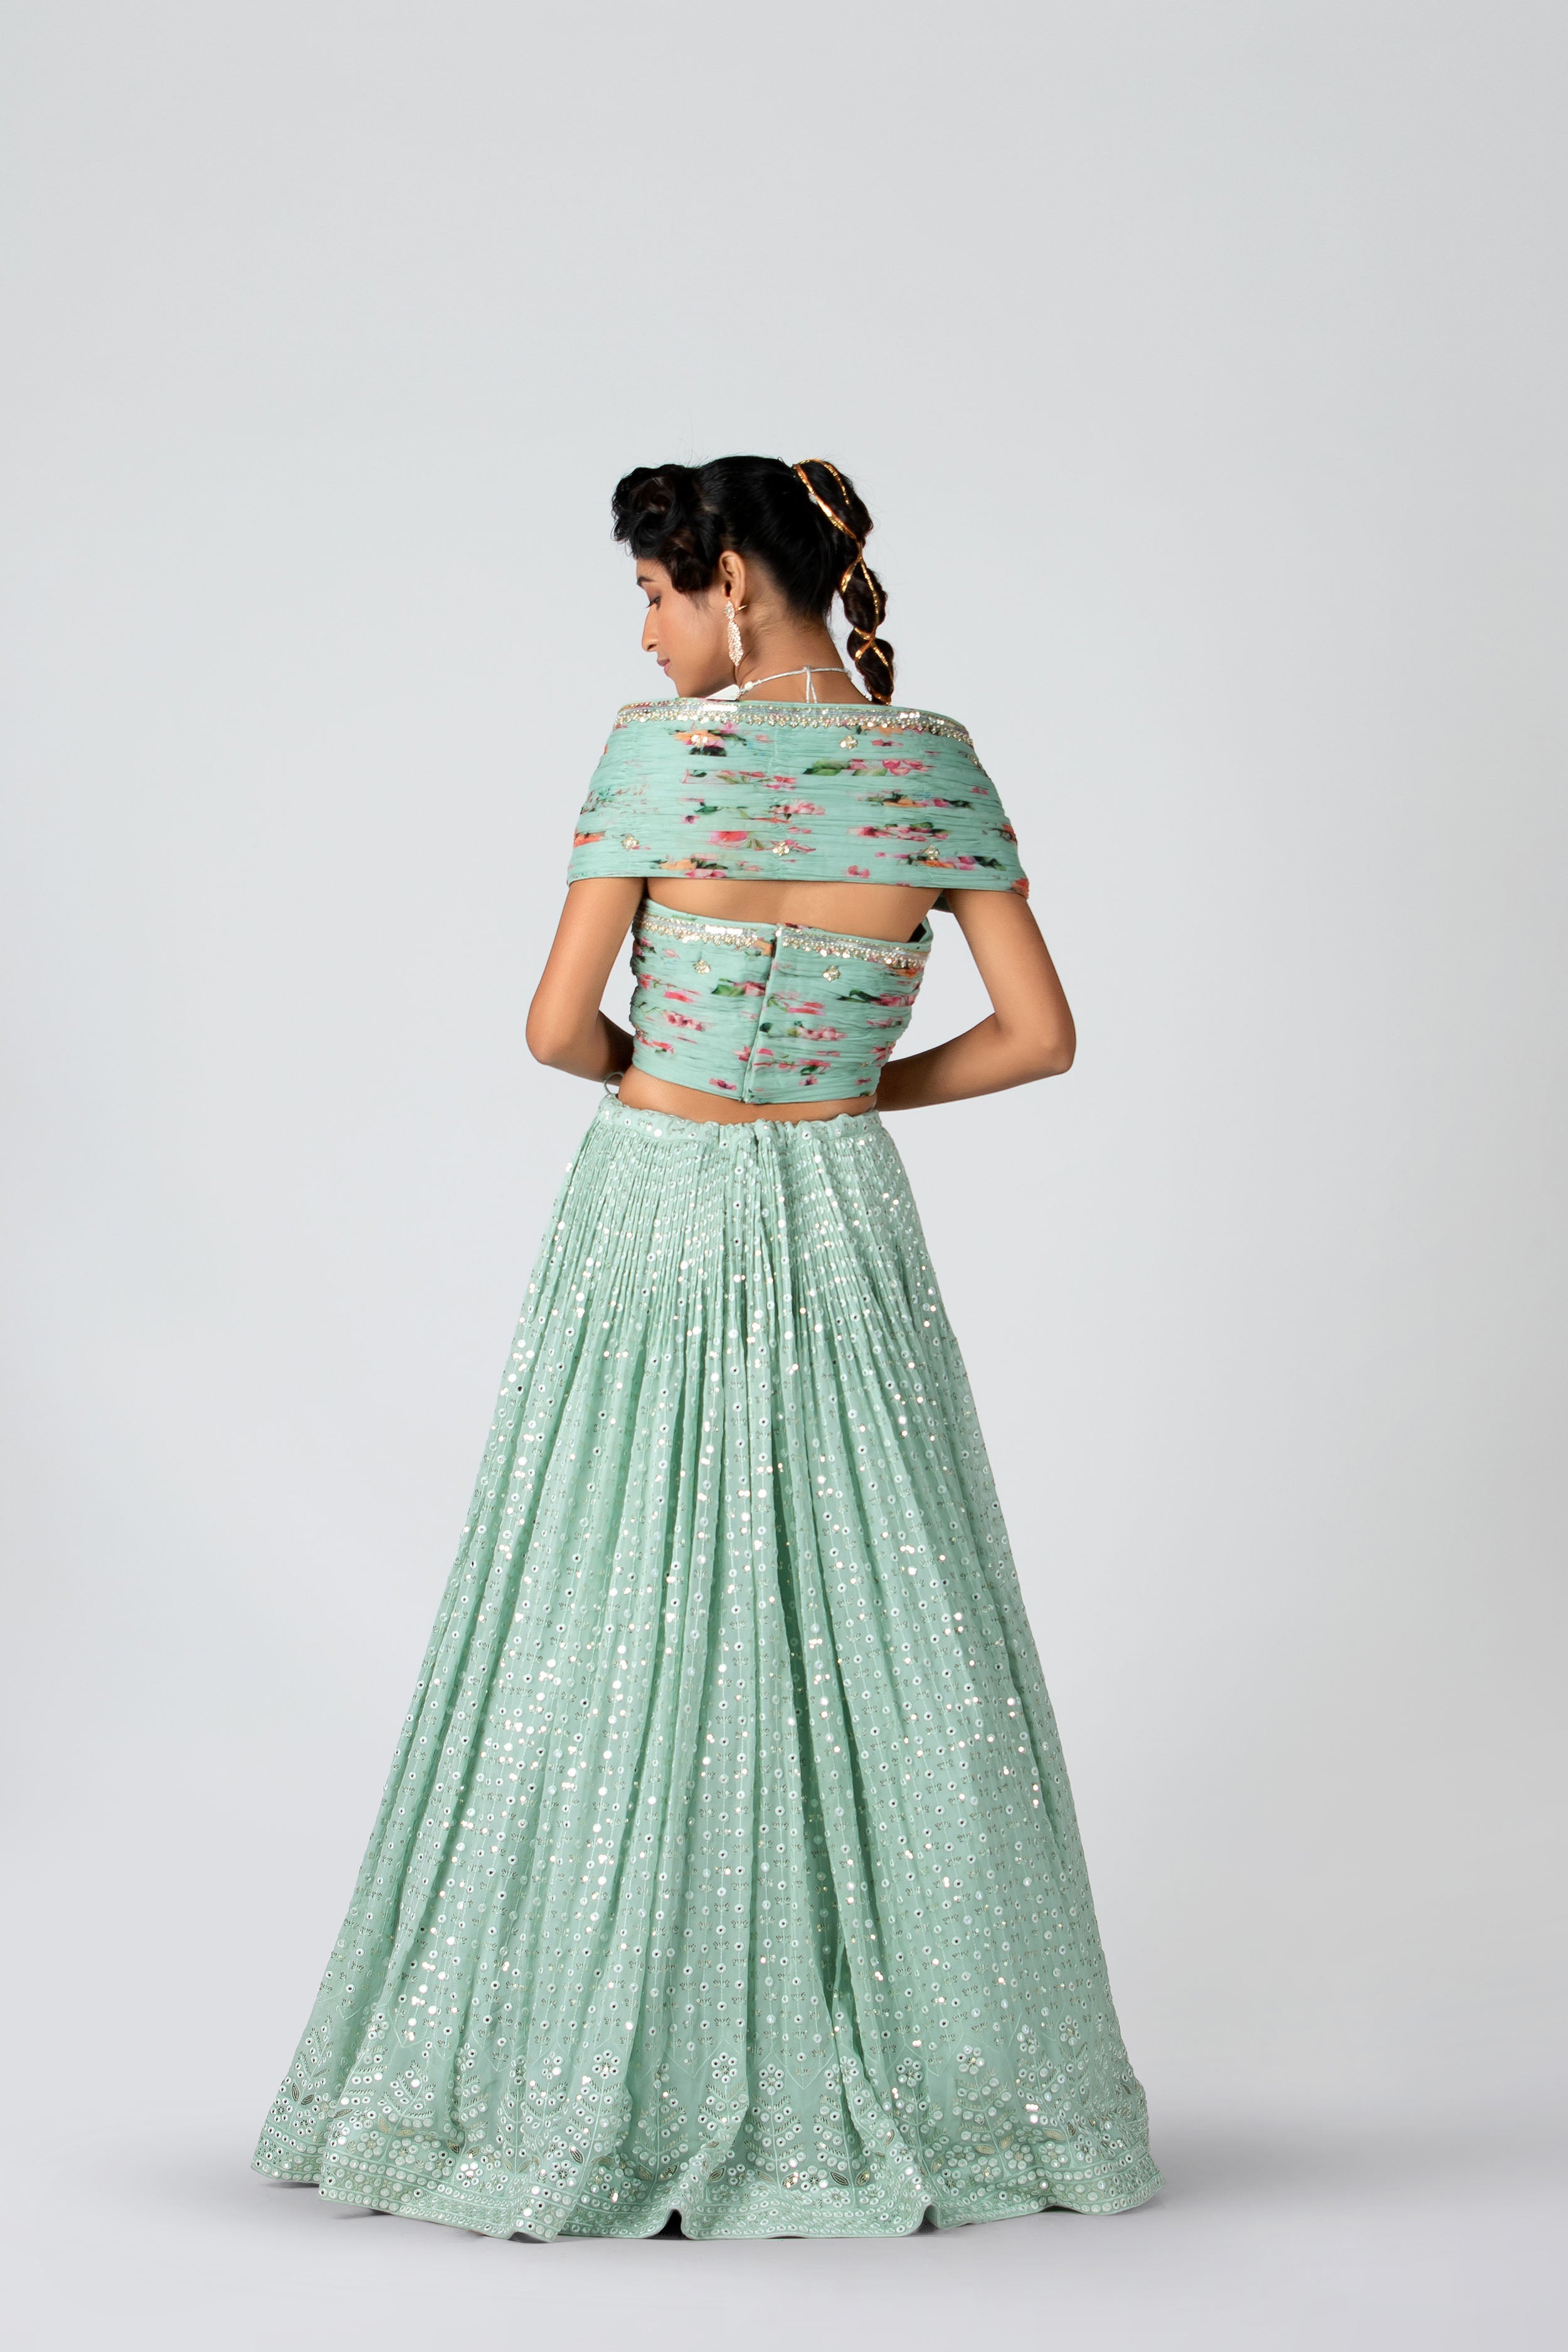 Suruchi Parakh - Sea Green Georgette & Organza Skirt Set